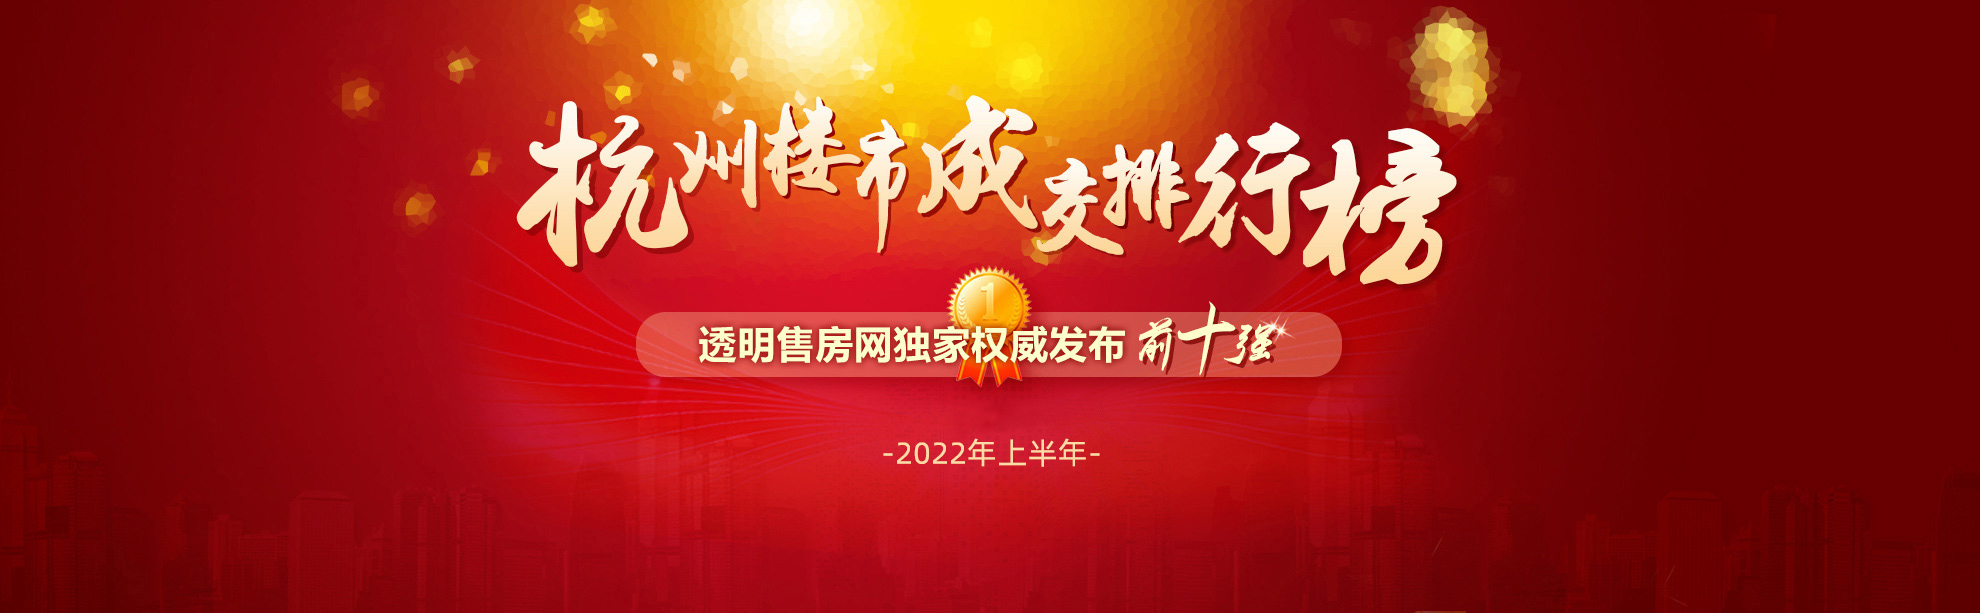 2022年上半年杭州楼市成交排行榜